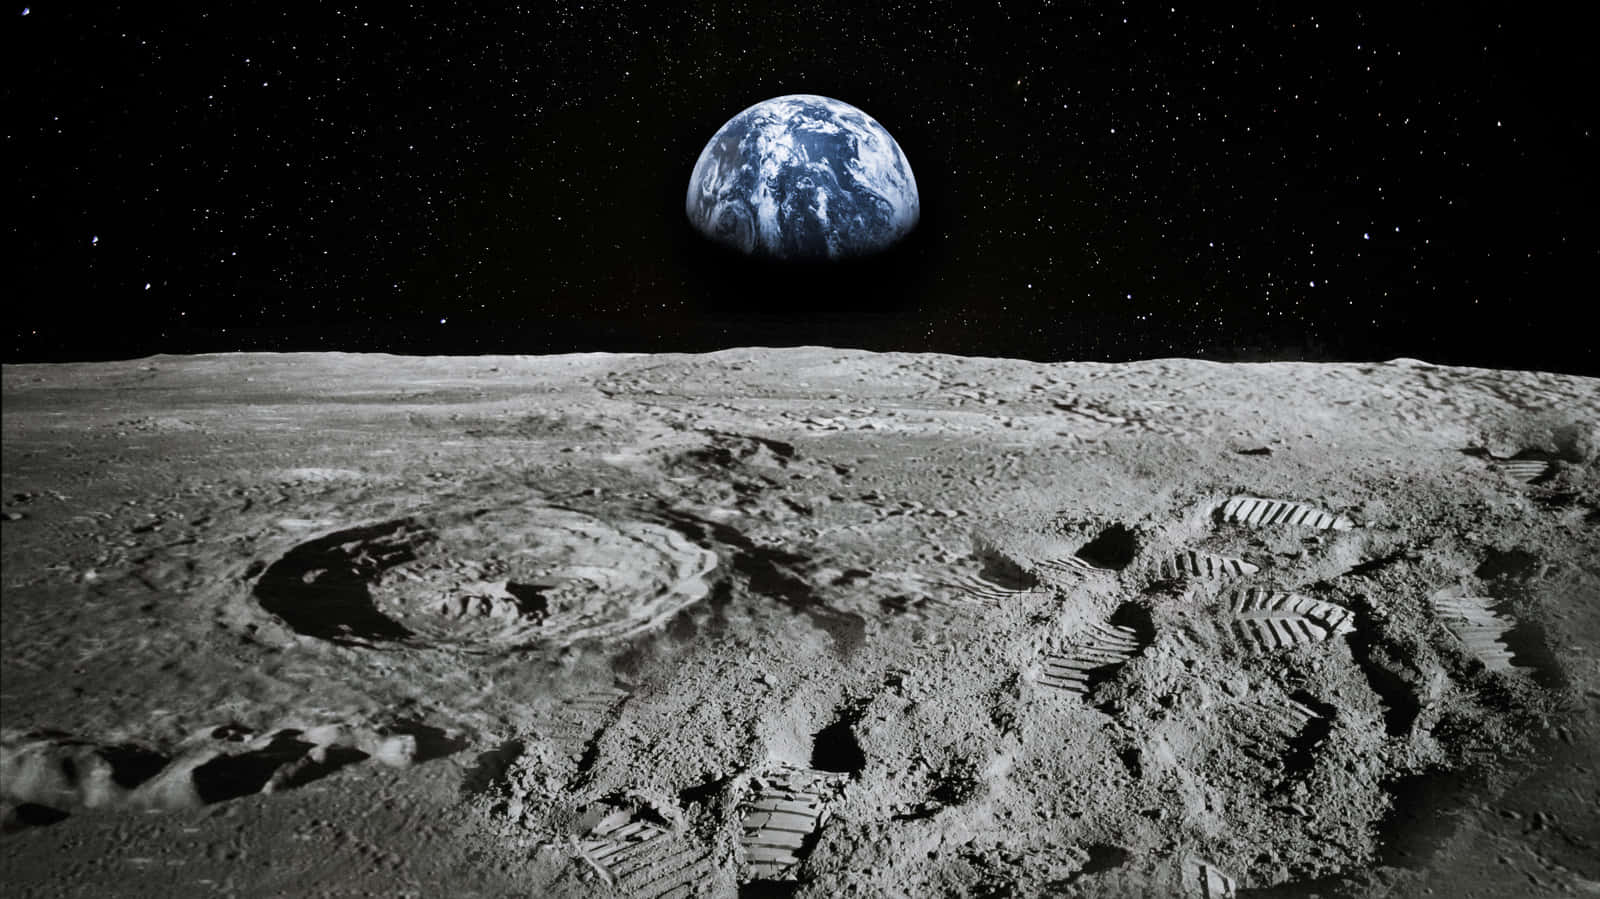 Imagende La Superficie Craterizada De La Tierra Y La Luna